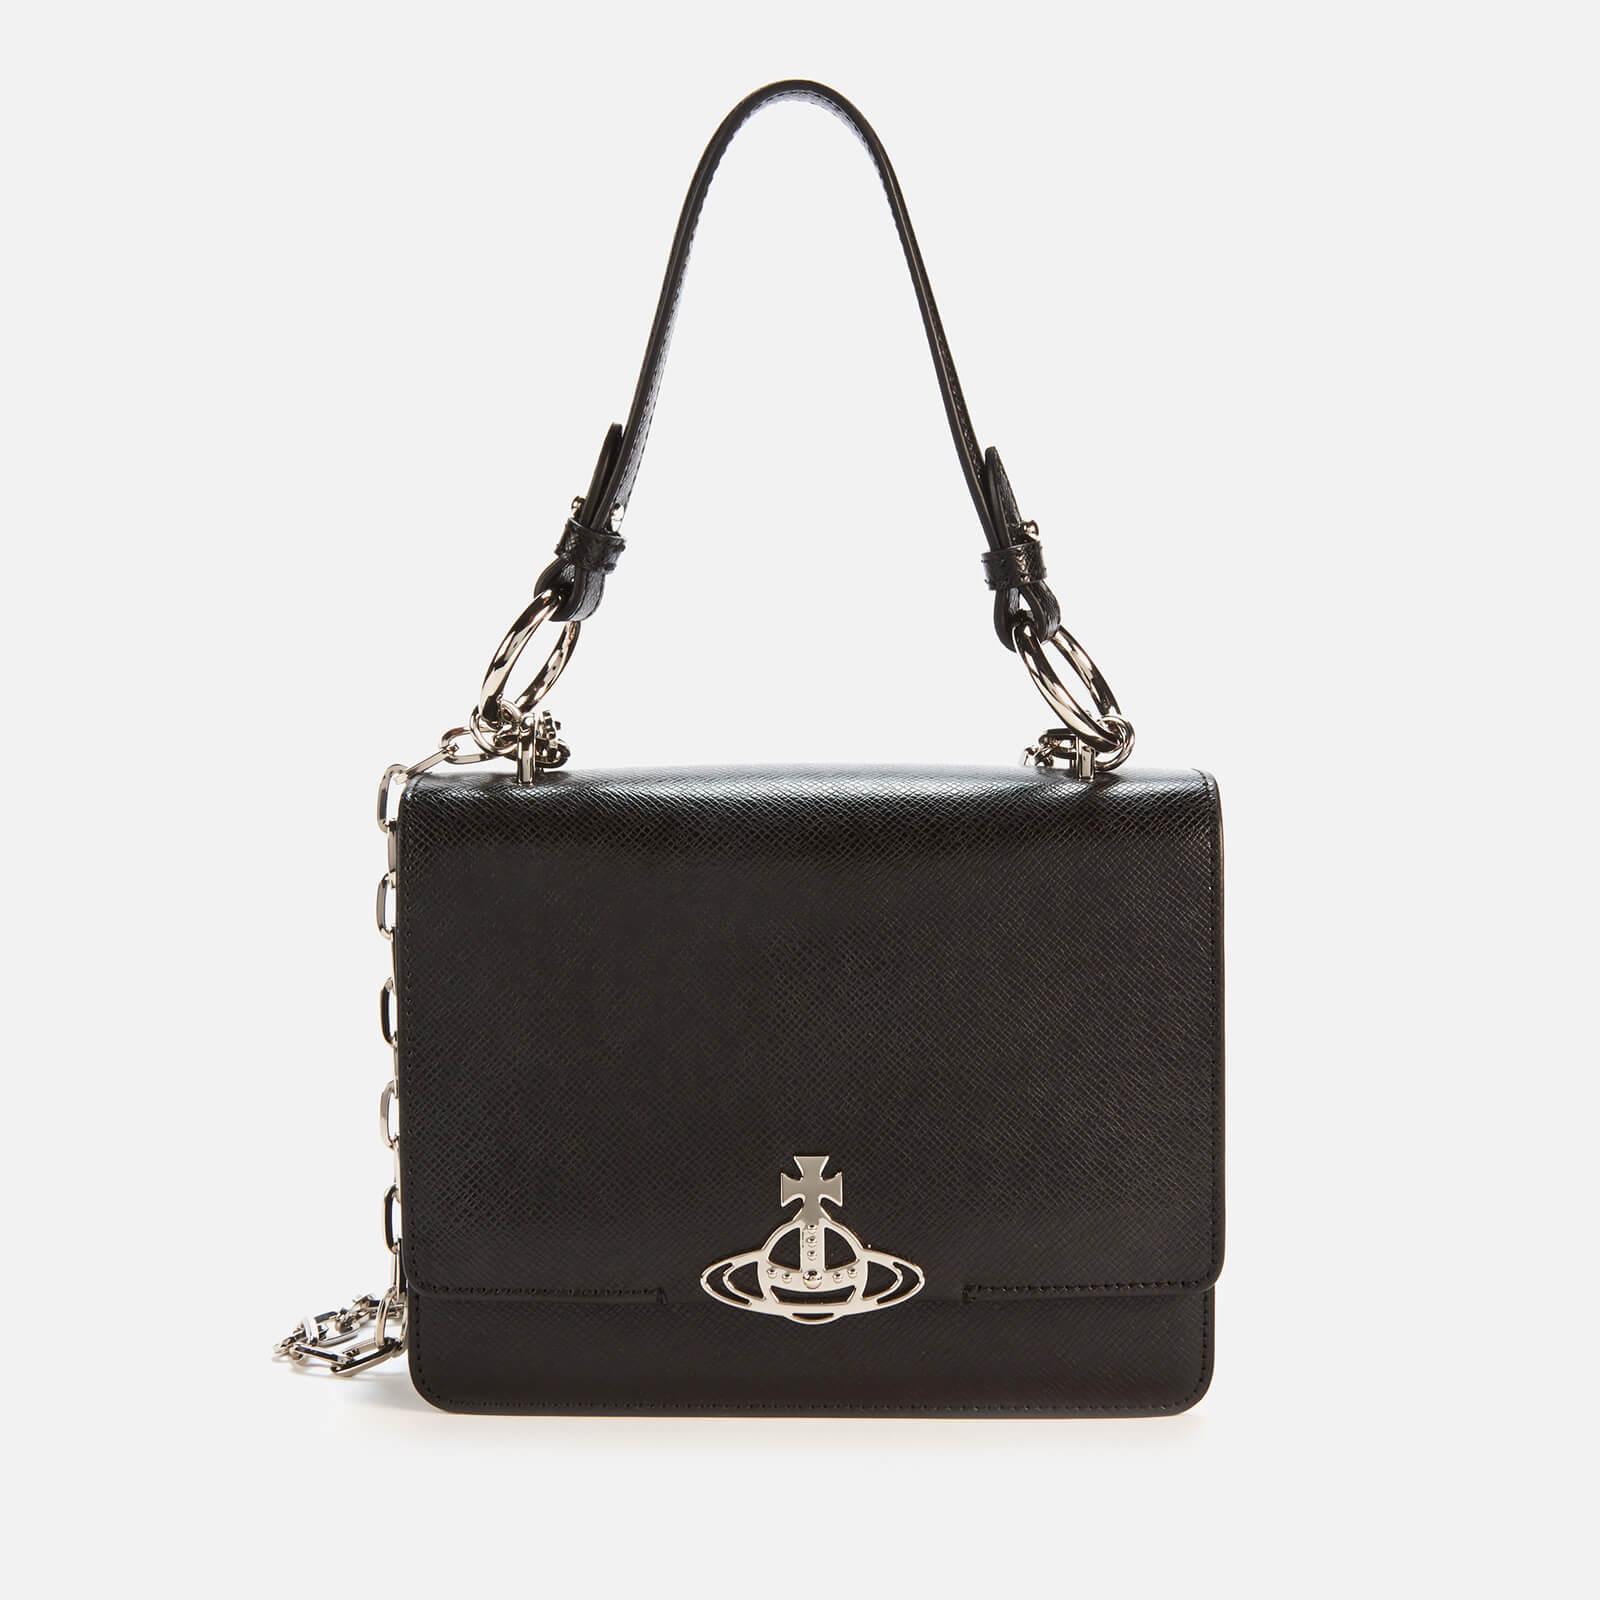 Vivienne Westwood Leather Debbie Medium Bag With Flap in Black | Lyst